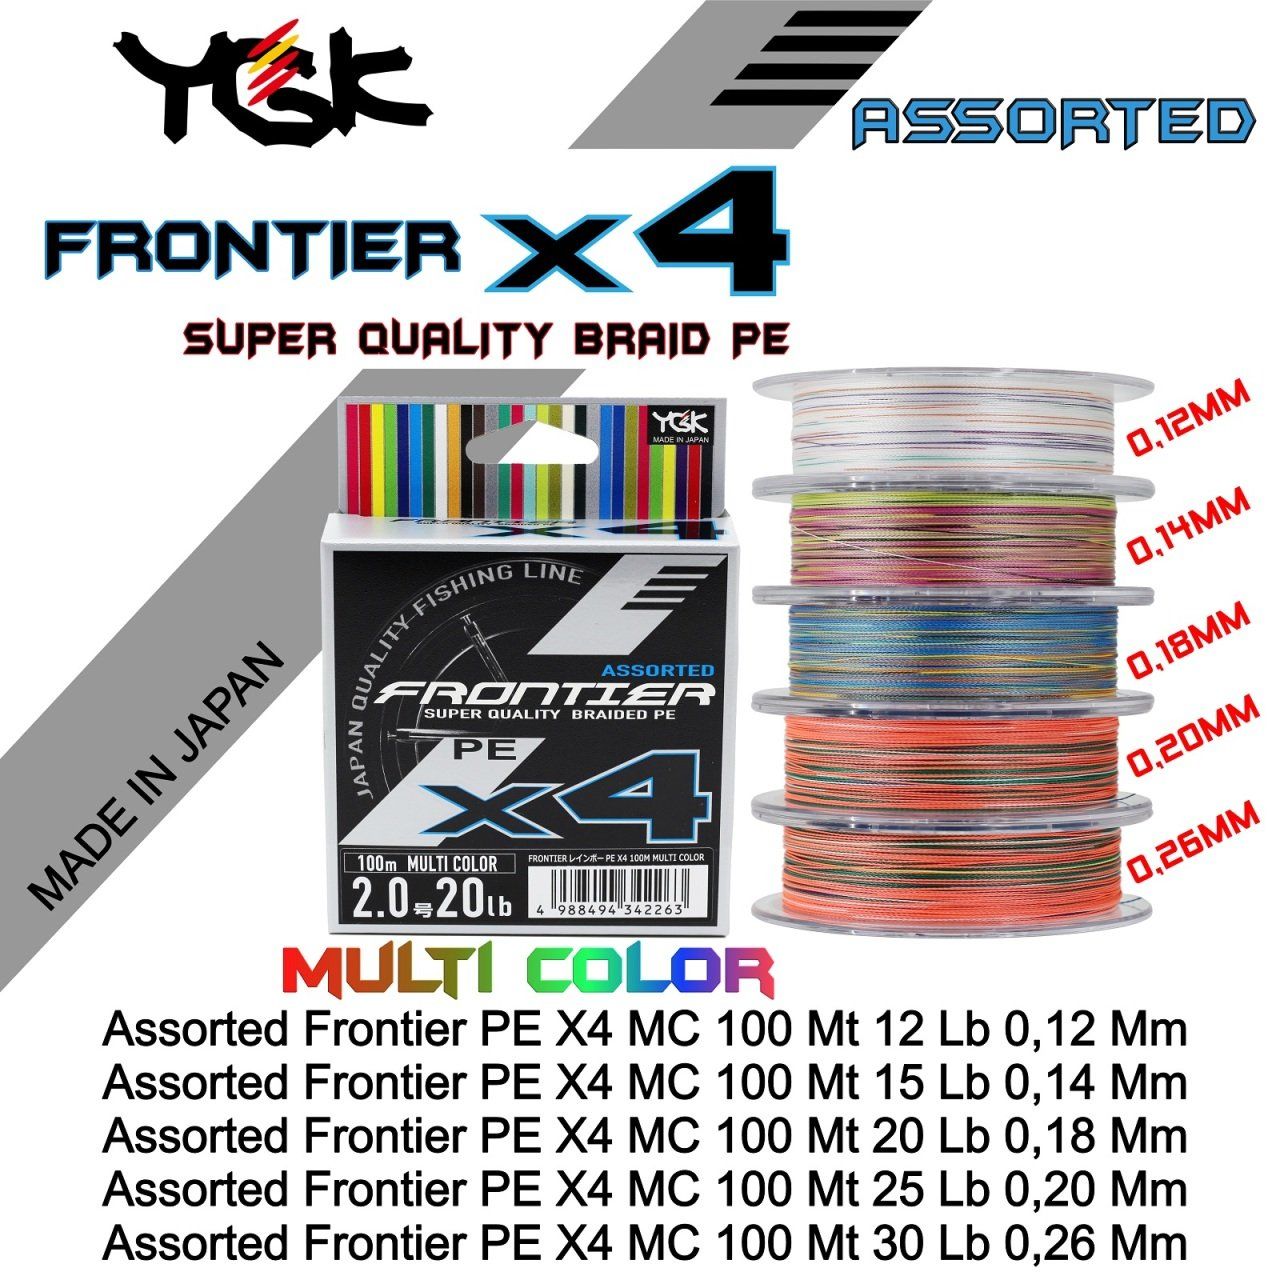 Assorted Frontier PE X4 MC 100 Mt